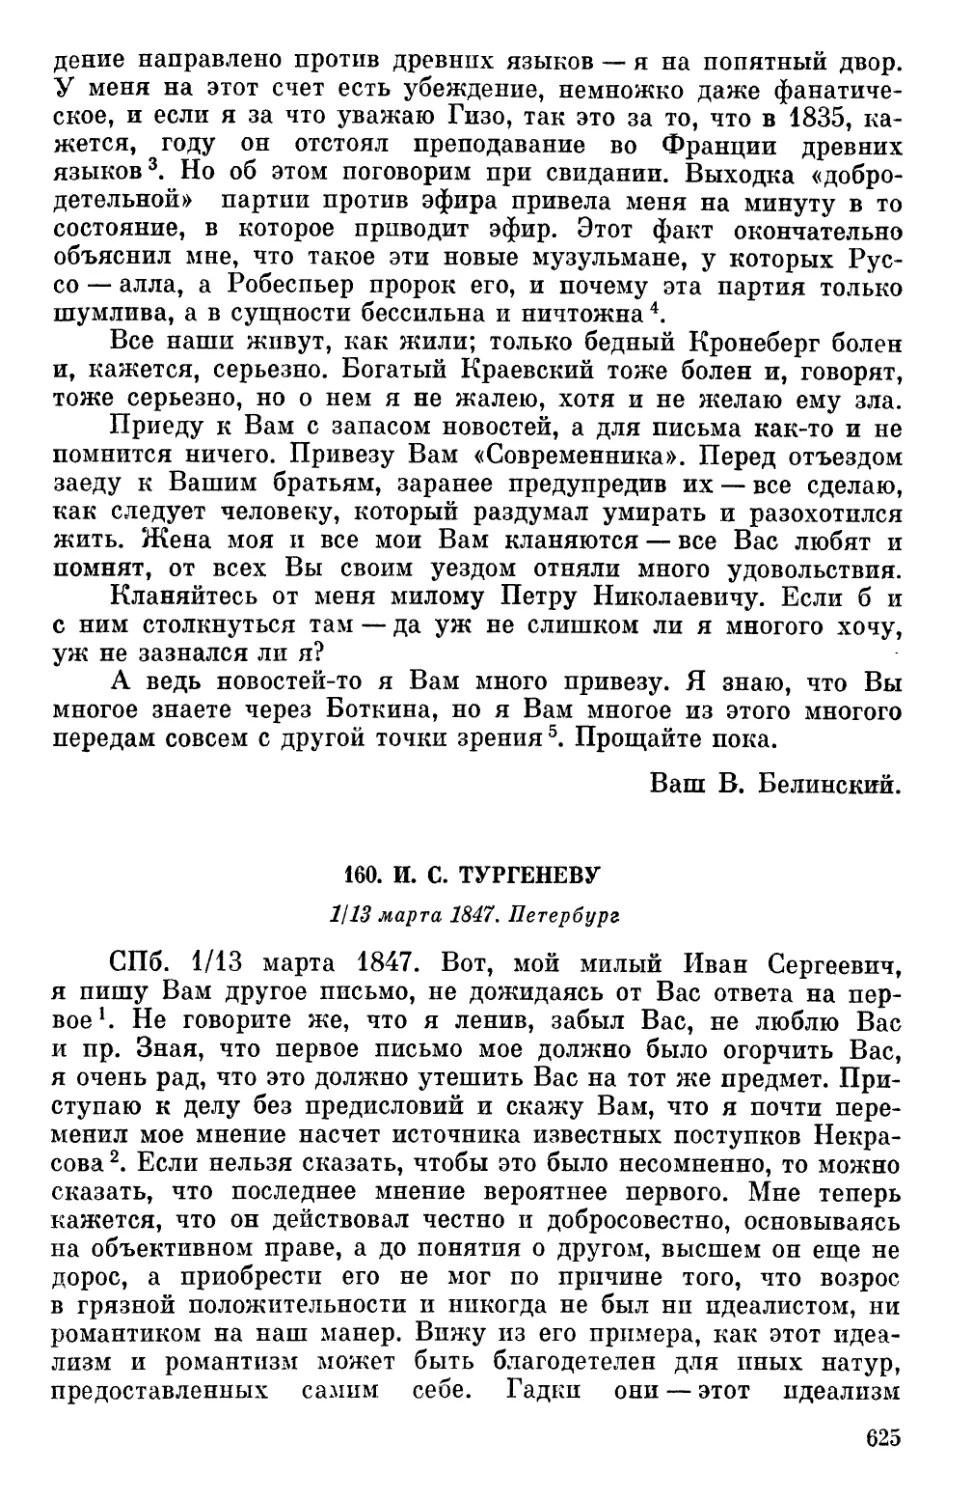 160. И. С. Тургеневу. 1/13 марта 1847